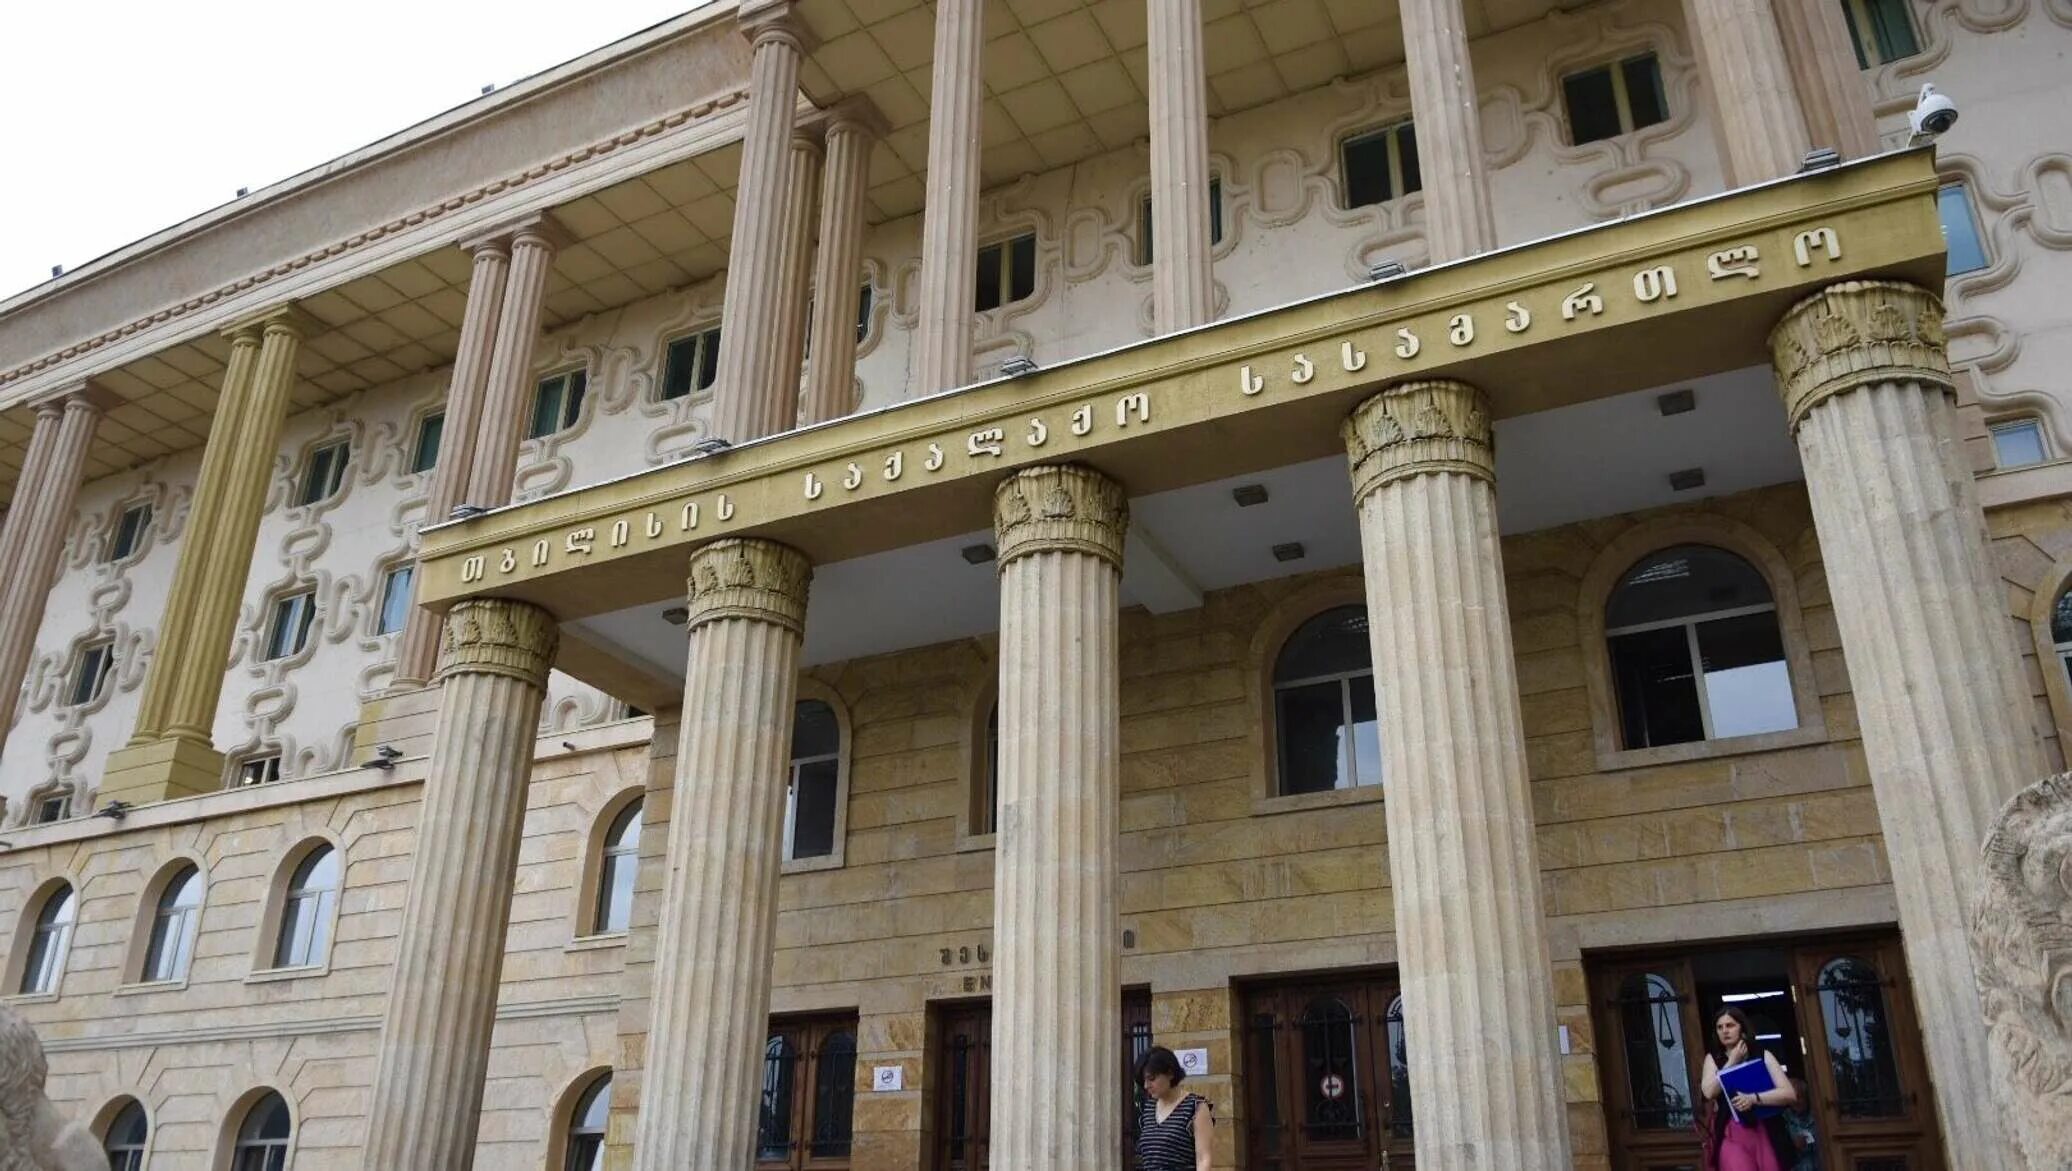 Тбилисский суд. Суд Тбилиси. Здание городского суда в Тбилиси. Тбилисский городской суд Грузии здание.